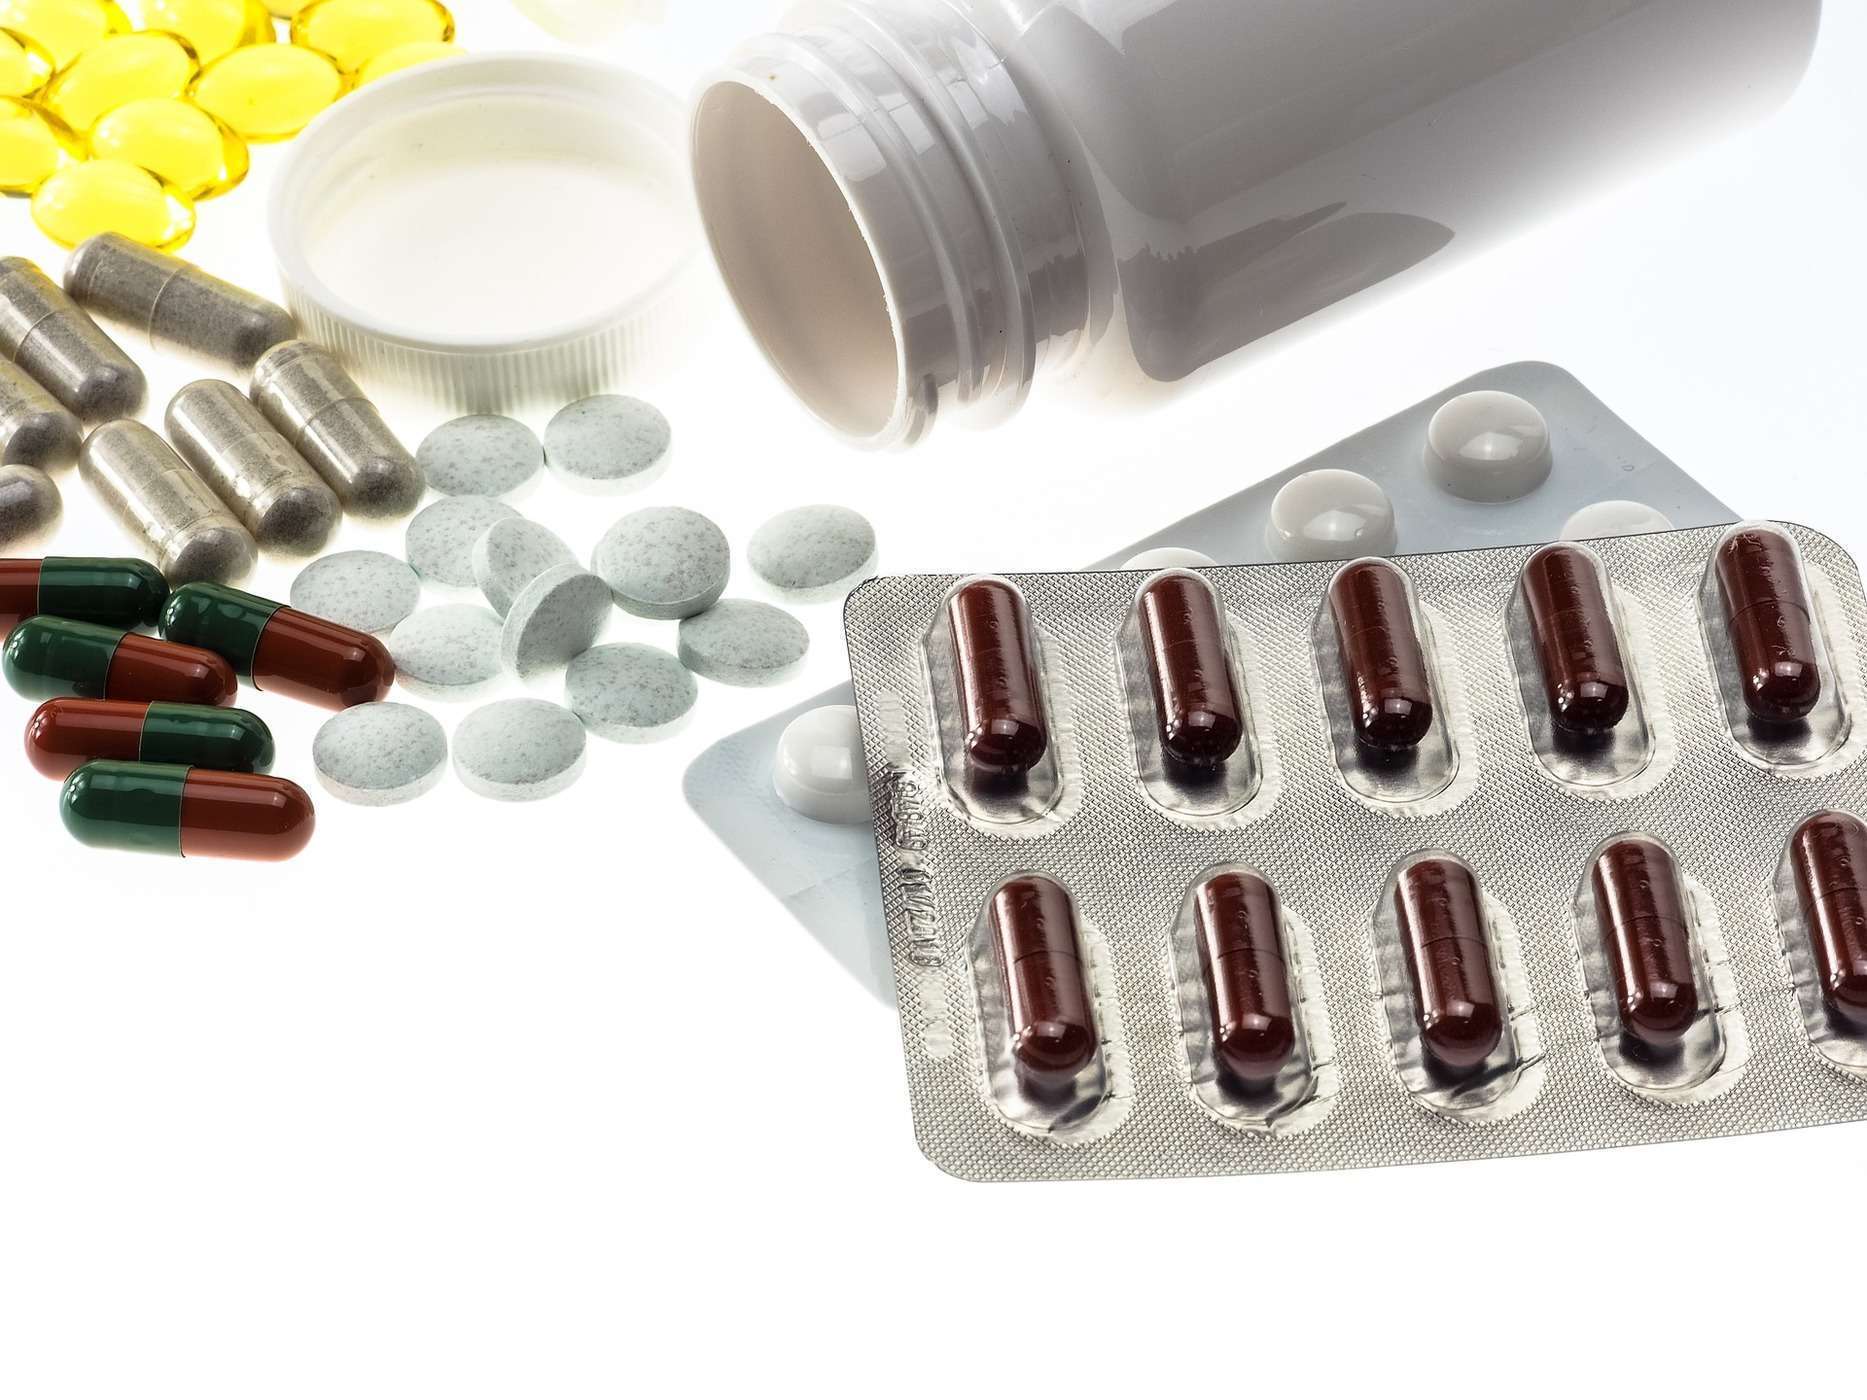 Risiko Efek Samping Obat Antiretroviral (ARV) Dalam Jangka Pendek dan Jangka Panjang